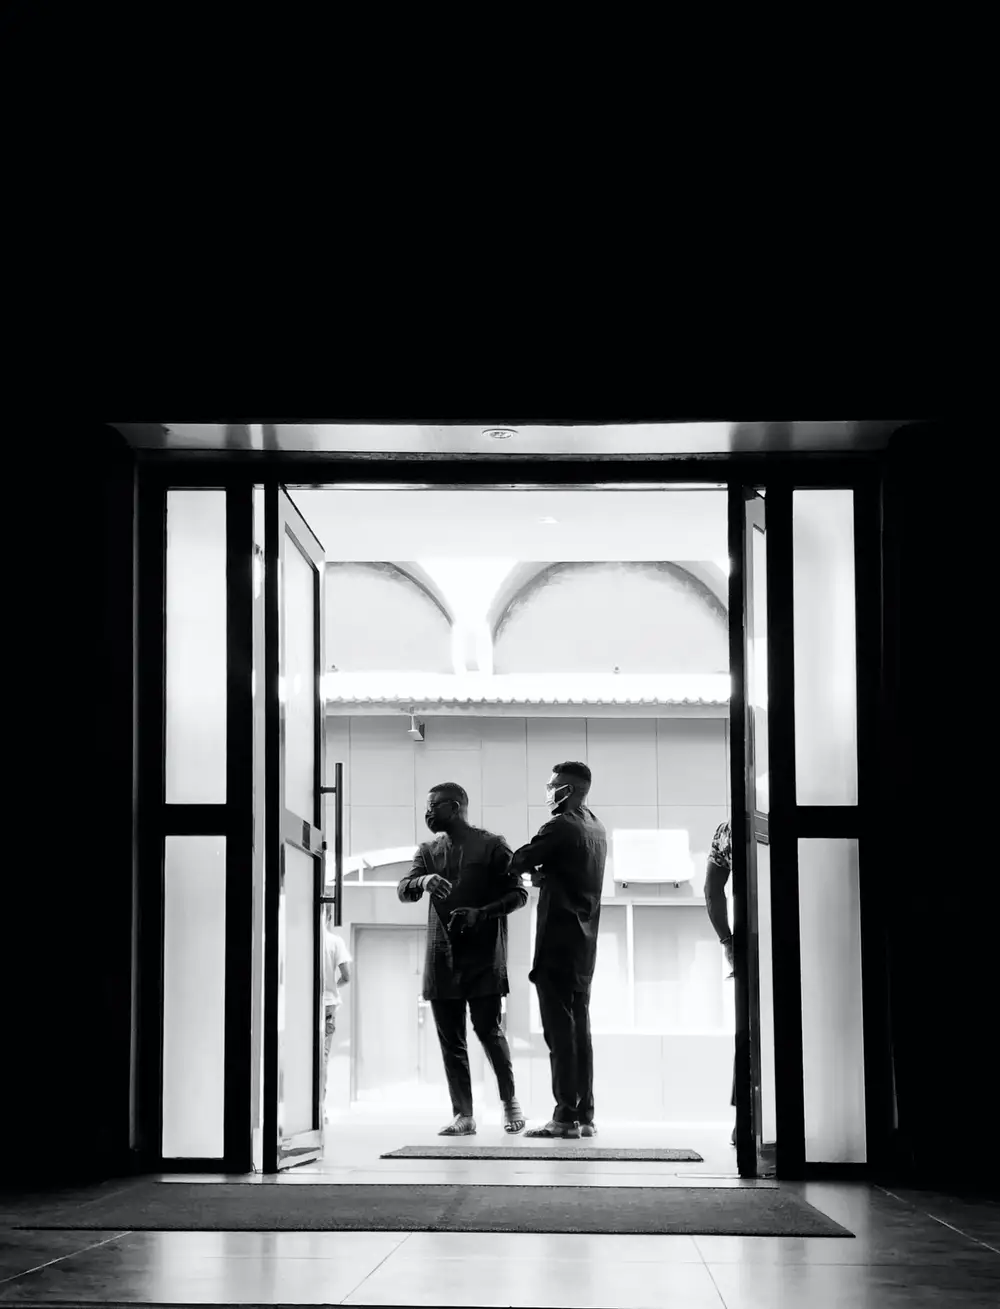 Two Men standing in the Hallway